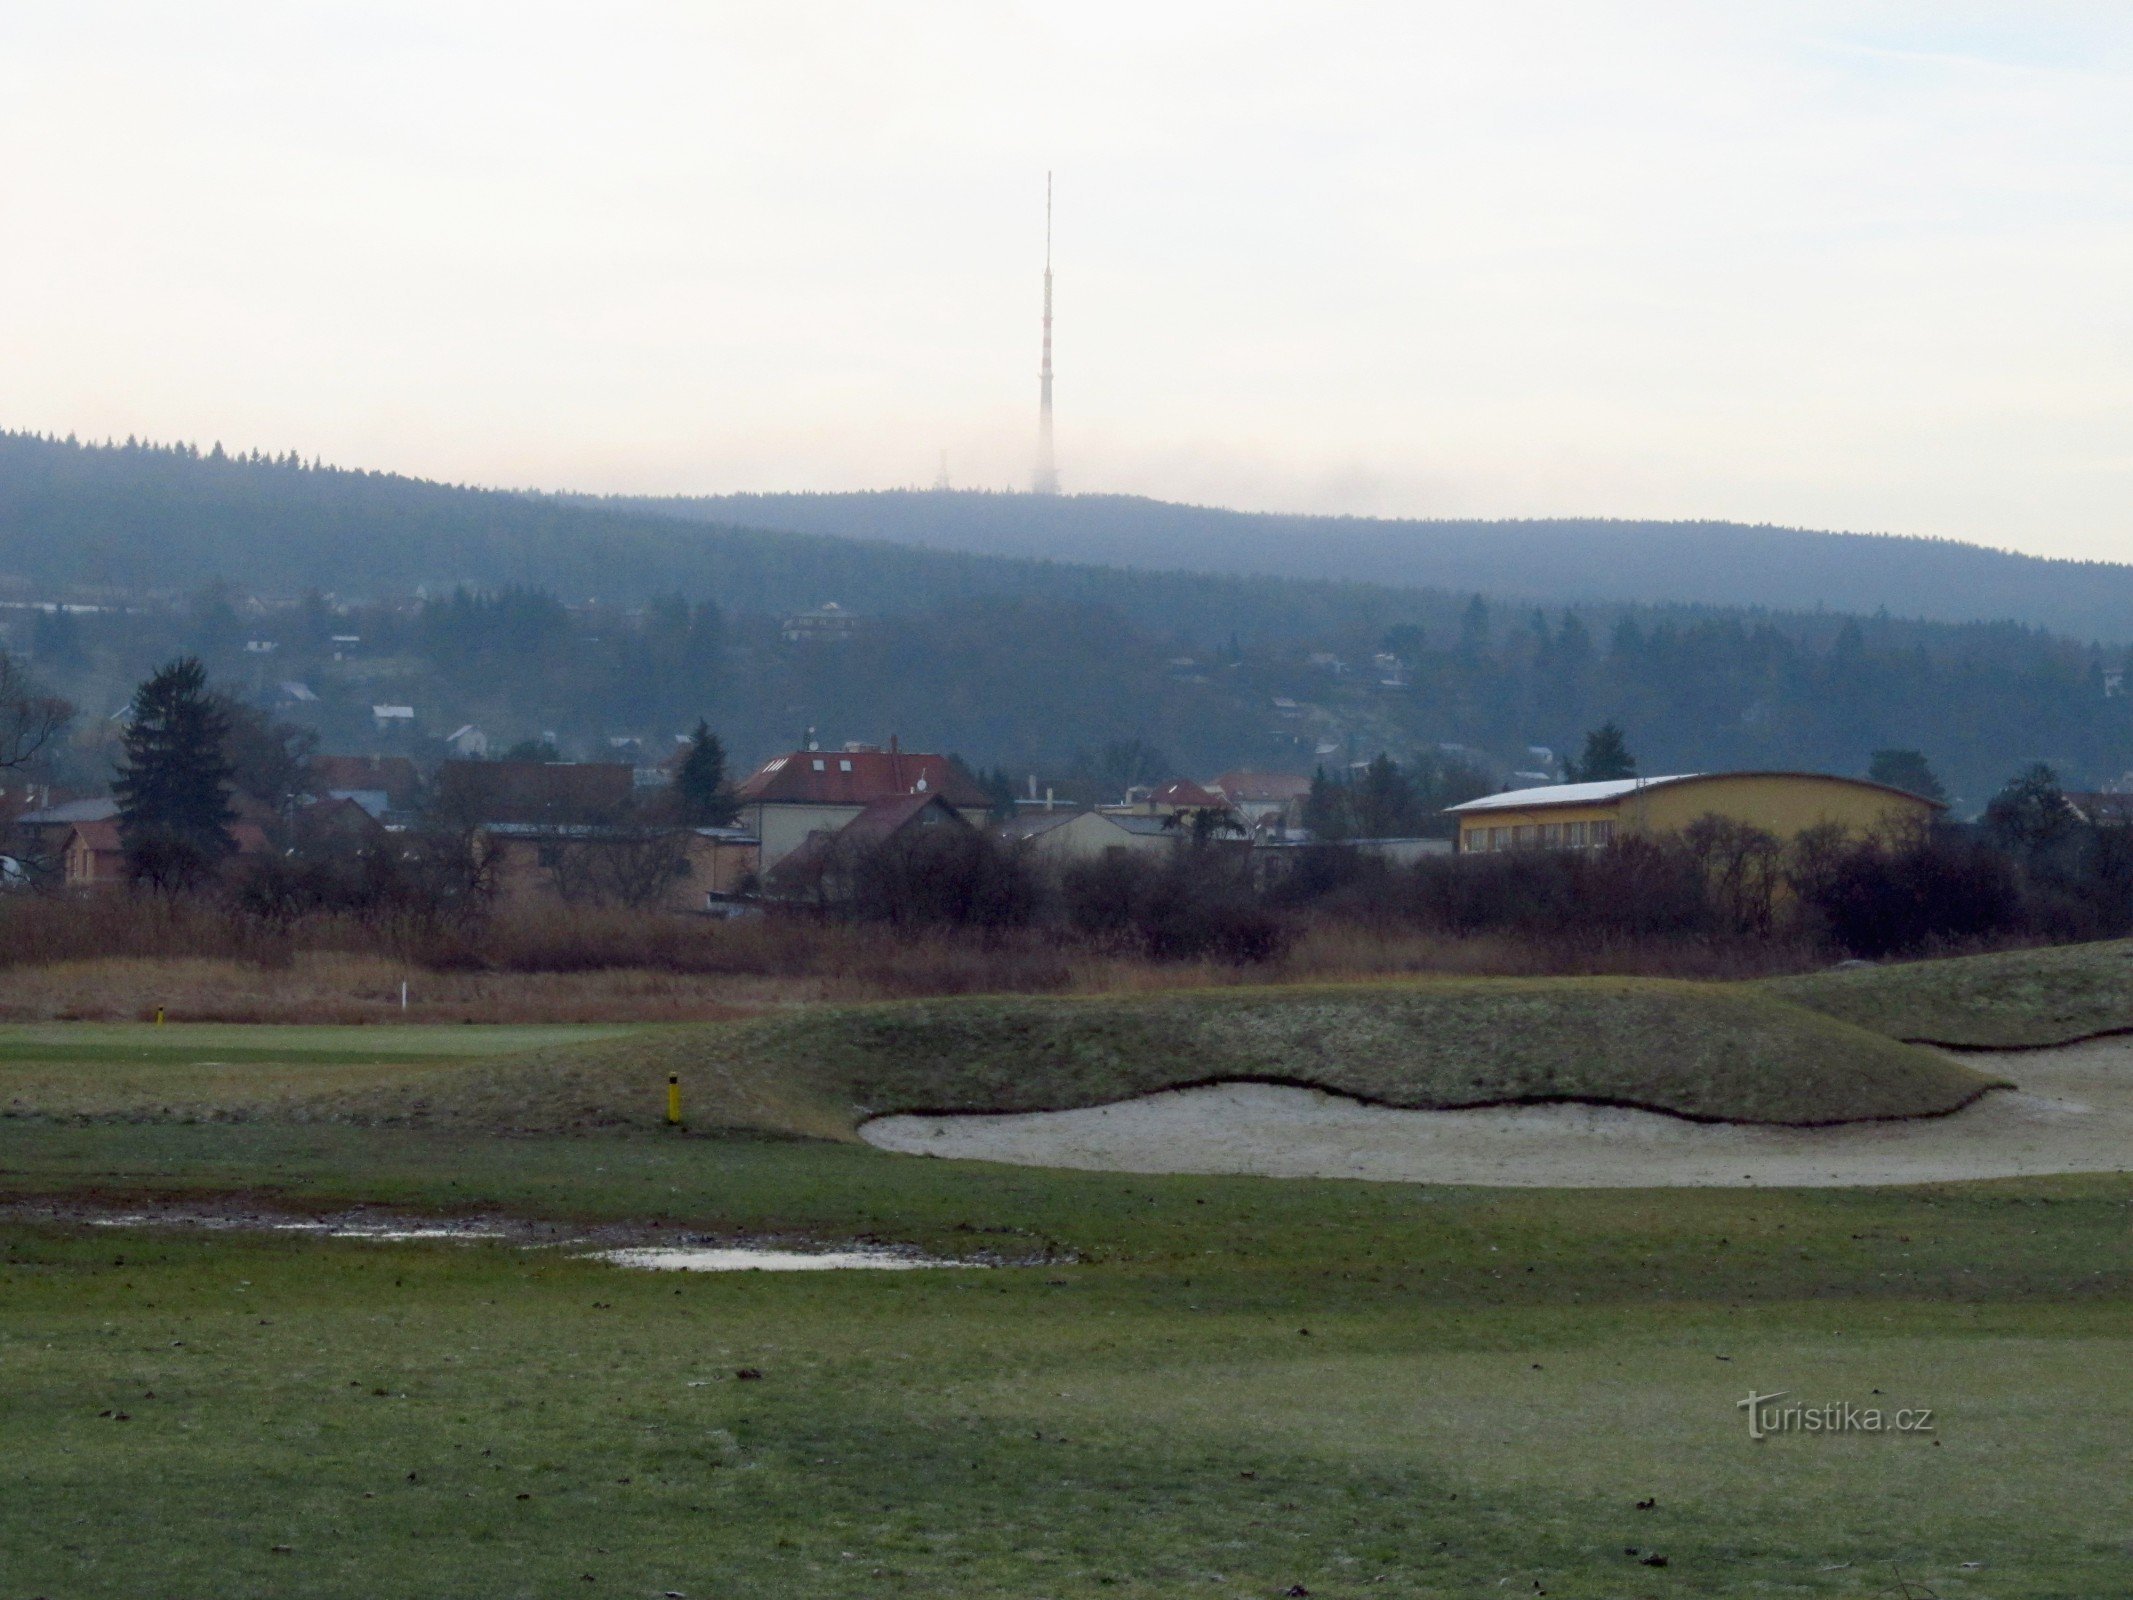 02 Peluňka golf course, Cukrák in the background